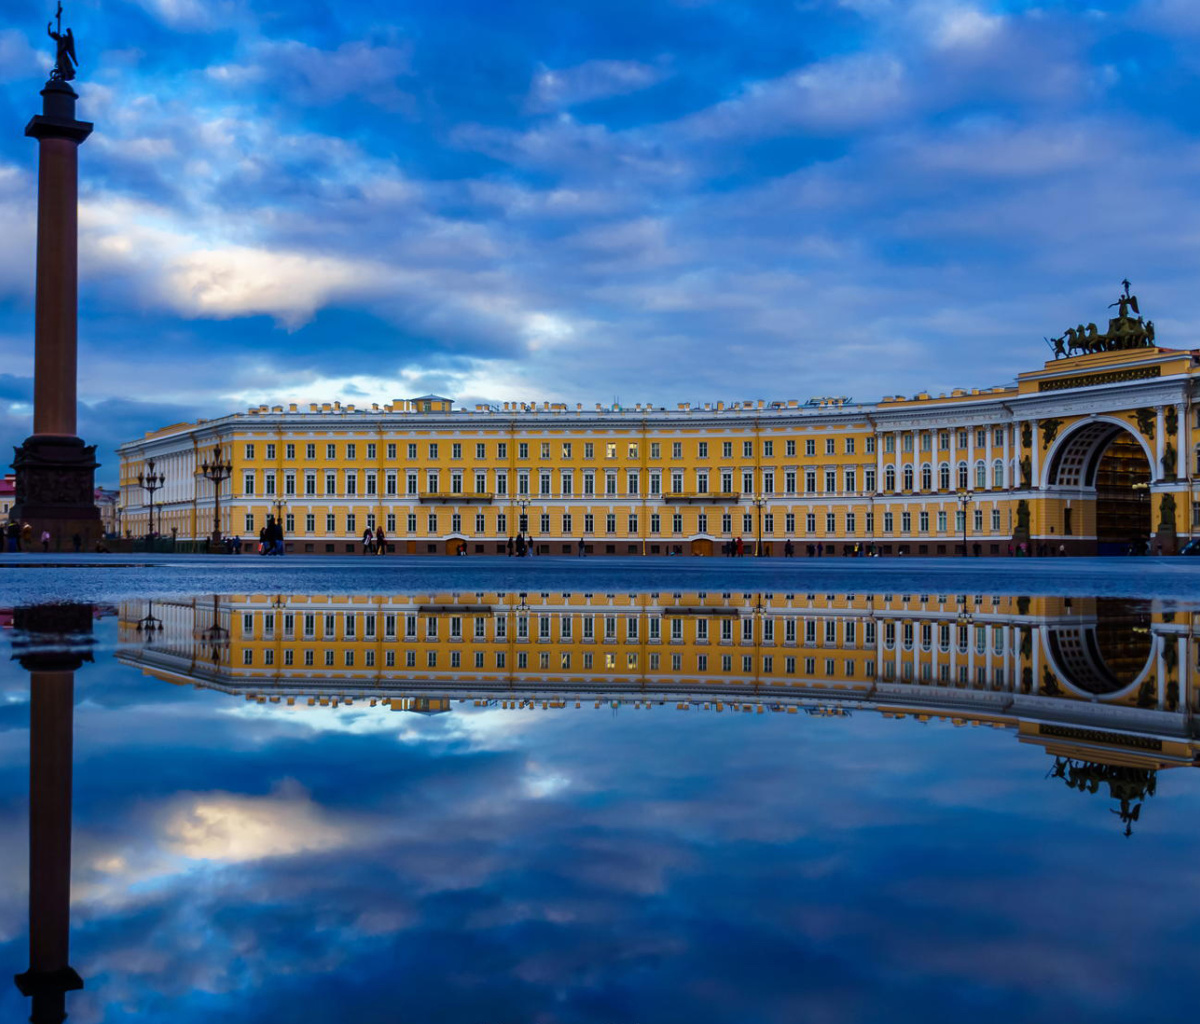 Das Saint Petersburg, Winter Palace, Alexander Column Wallpaper 1200x1024